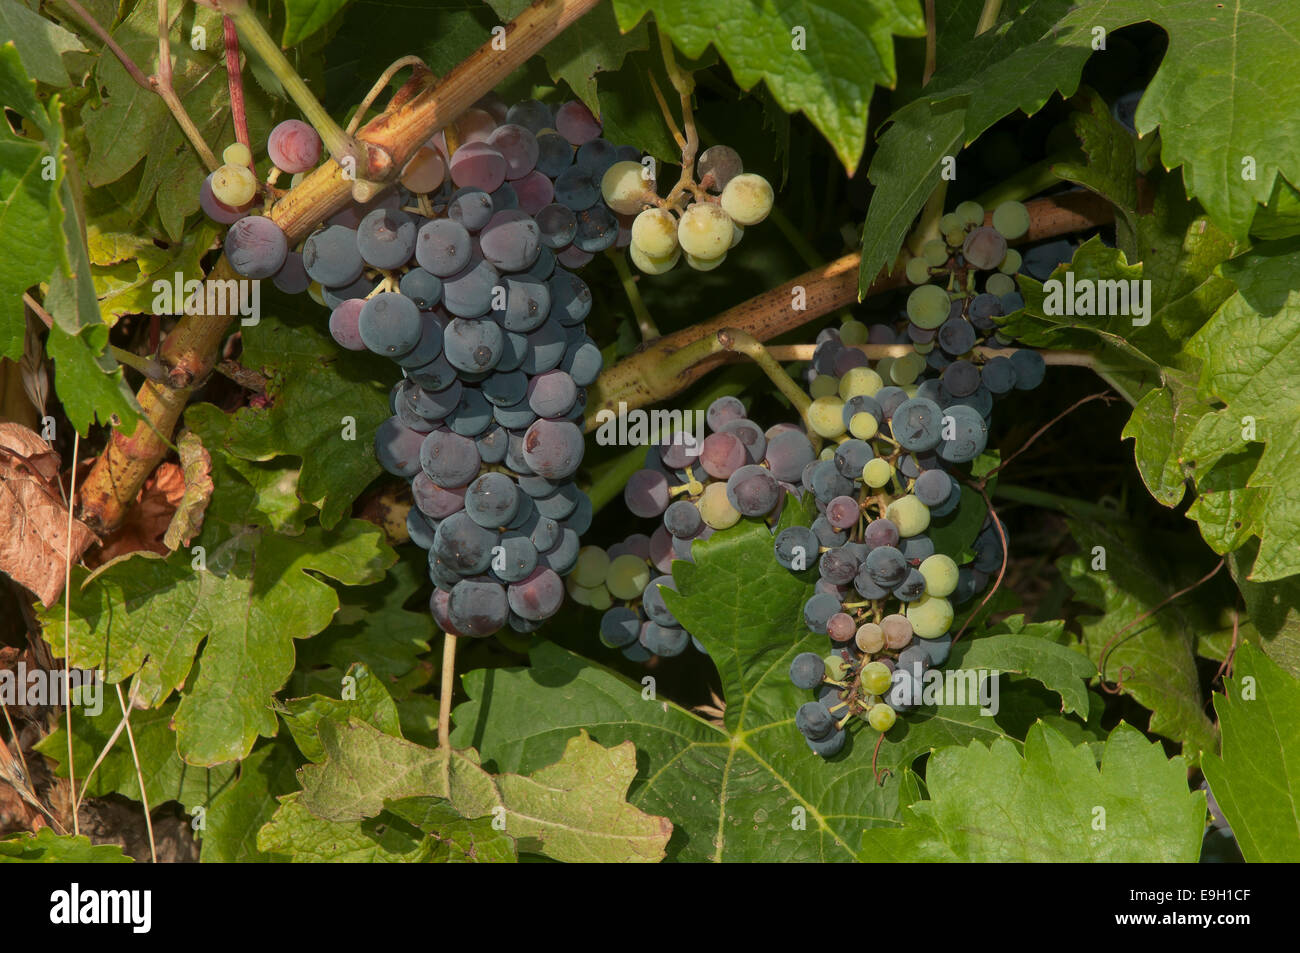 Les raisins noirs sur la vigne, Jerez de la Frontera, province de Cadiz, Andalousie, Espagne, Europe Banque D'Images